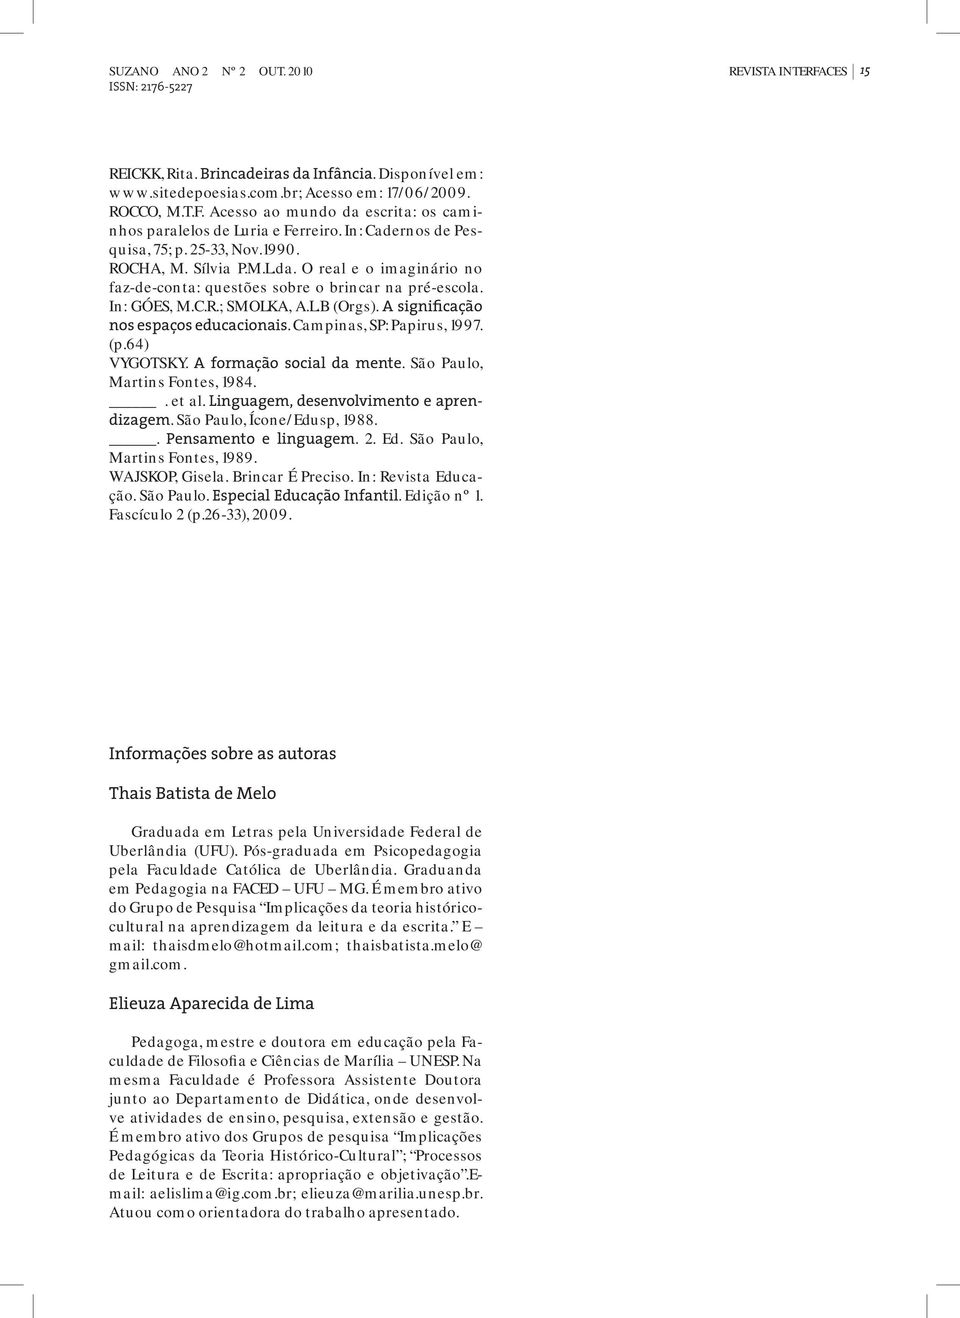 A significação nos espaços educacionais. Campinas, SP: Papirus, 1997. (p.64) VYGOTSKY. A formação social da mente. São Paulo, Martins Fontes, 1984.. et al. Linguagem, desenvolvimento e aprendizagem.